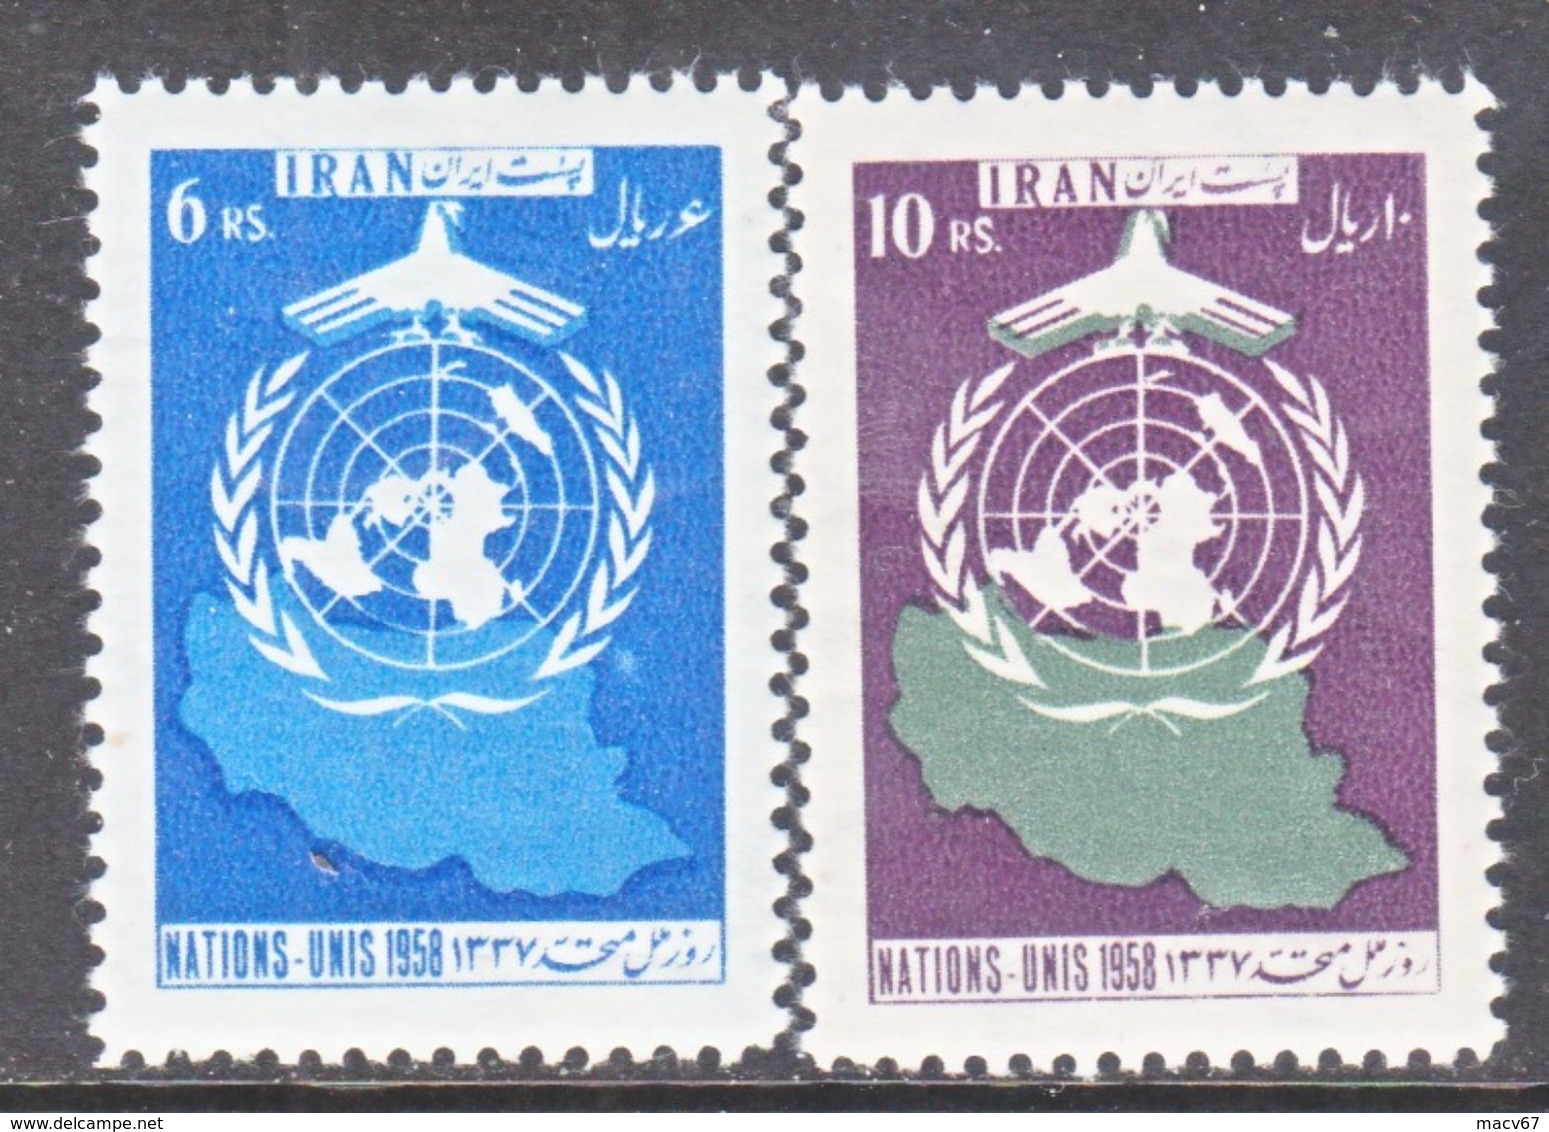 1 RAN  1126-7    *  UNITED  NATIONS - Iran